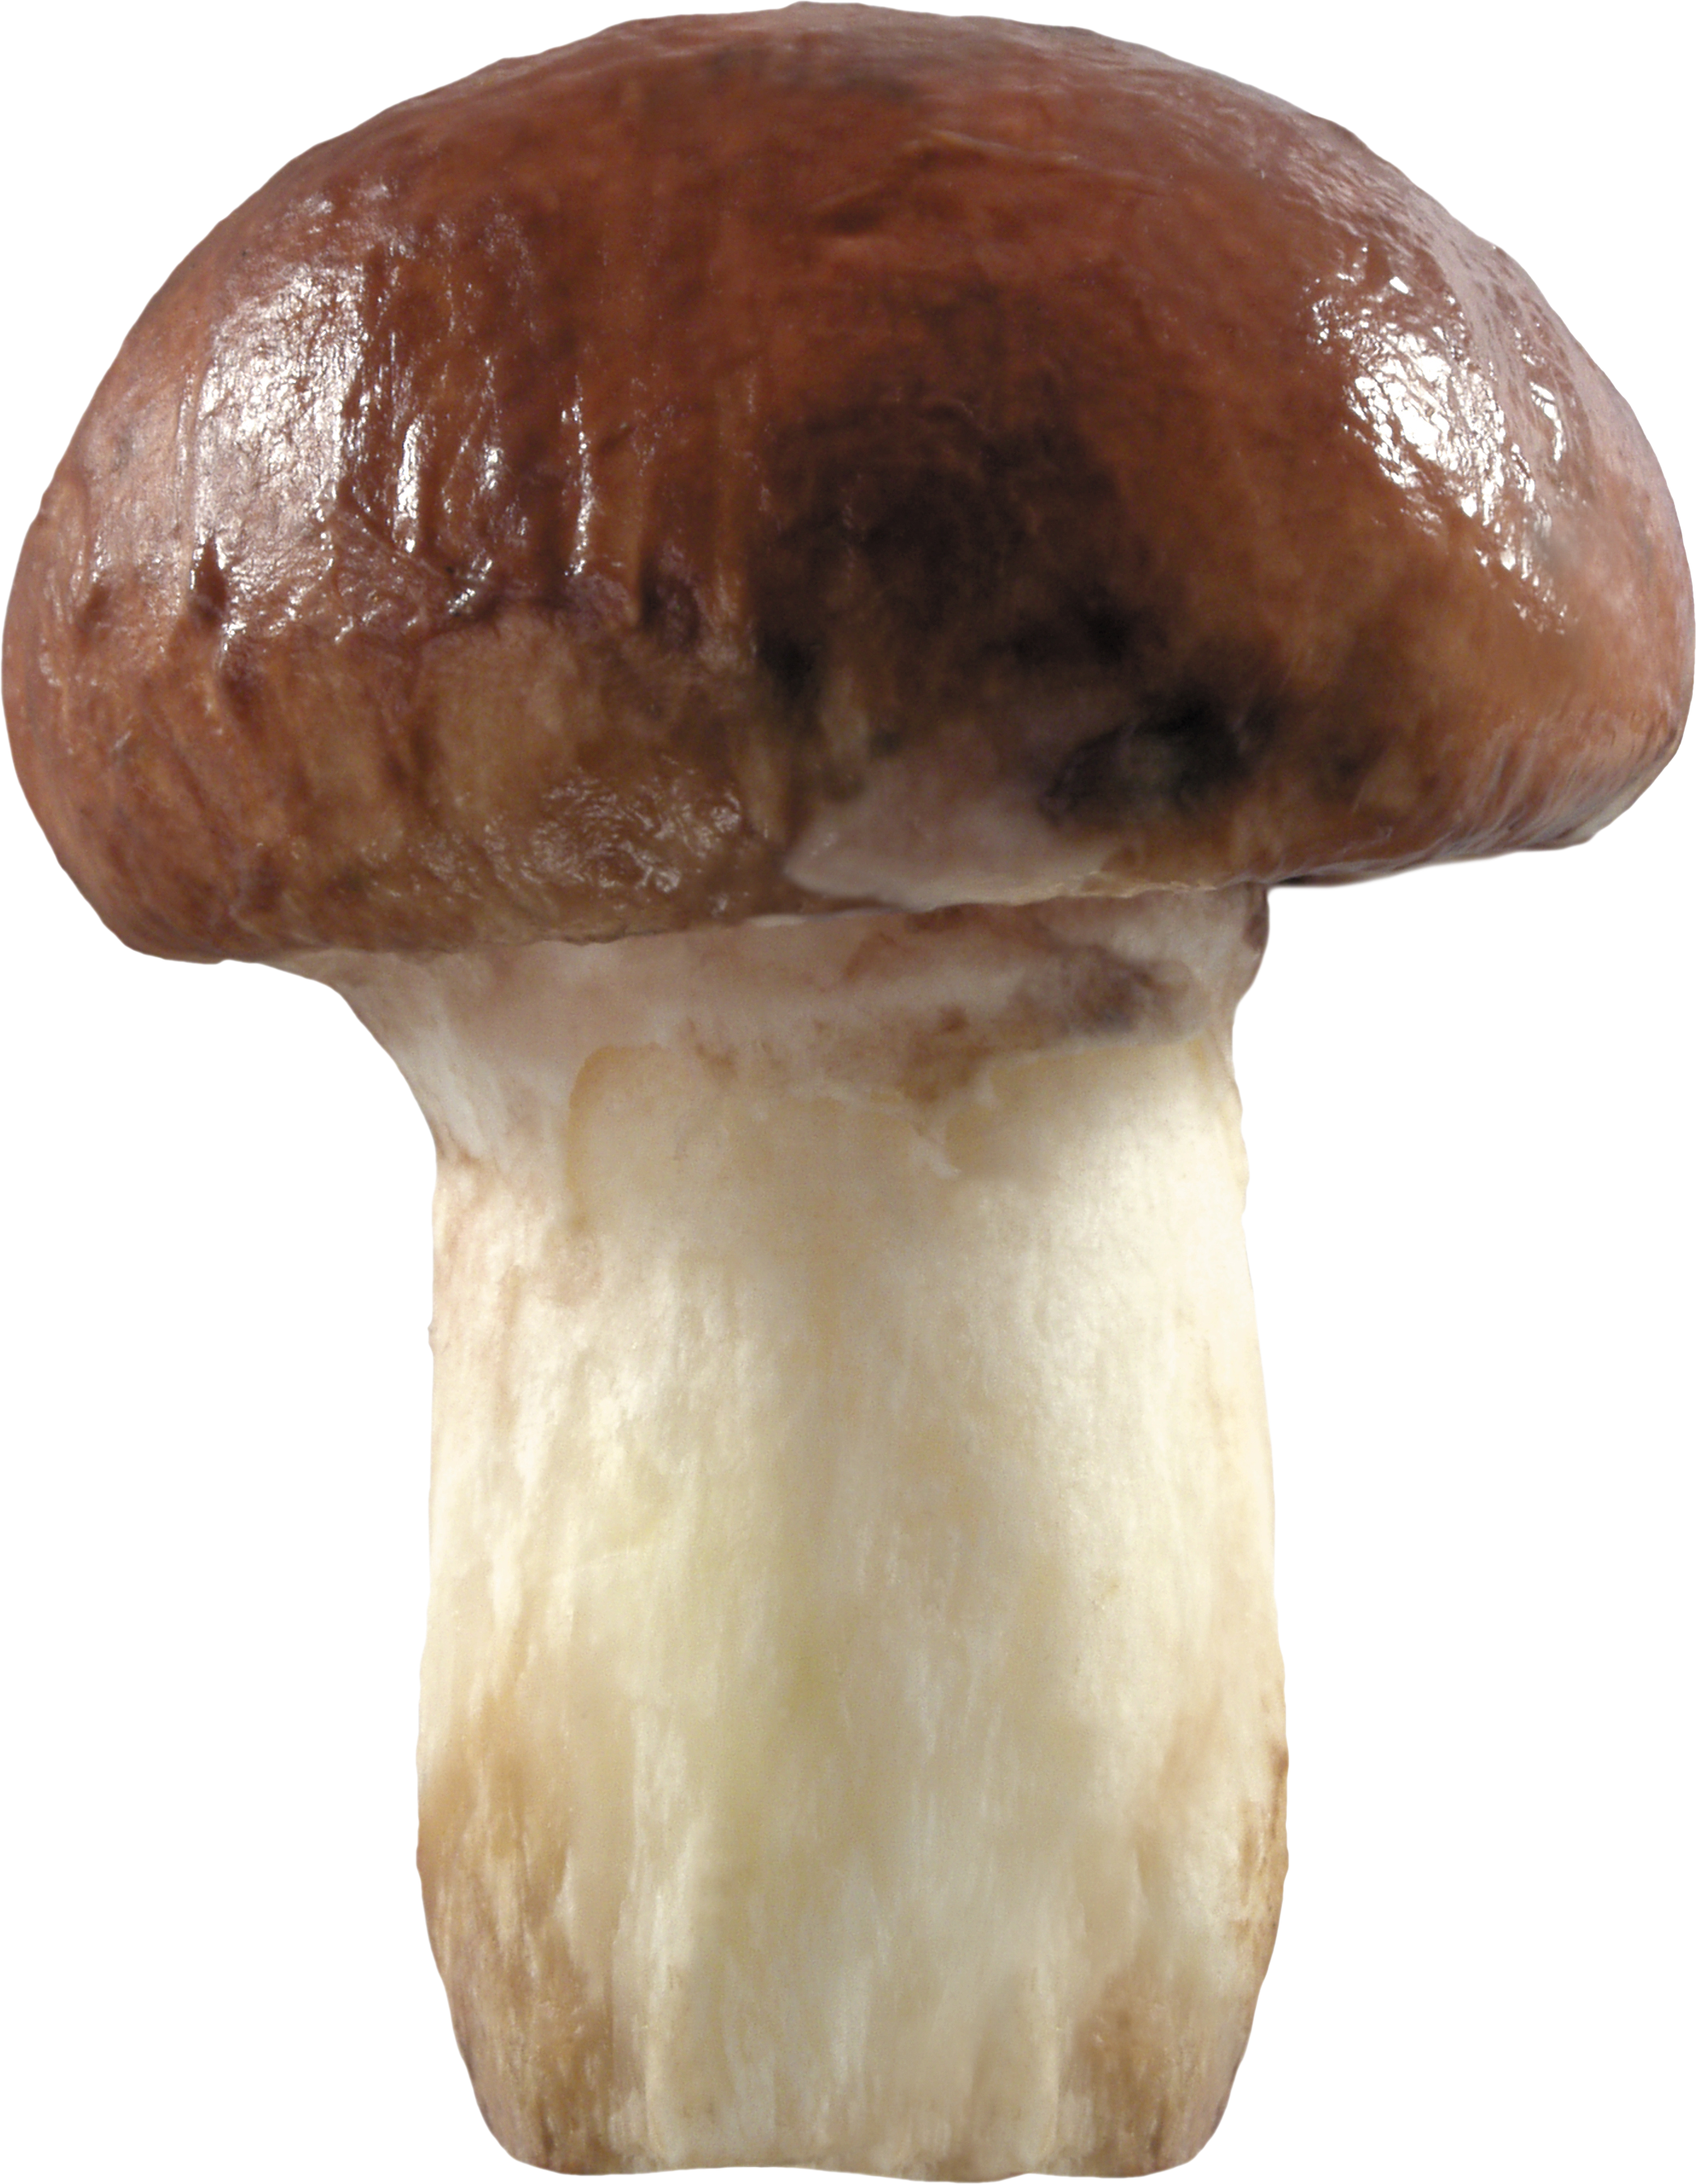 mushroom clipart toadstool